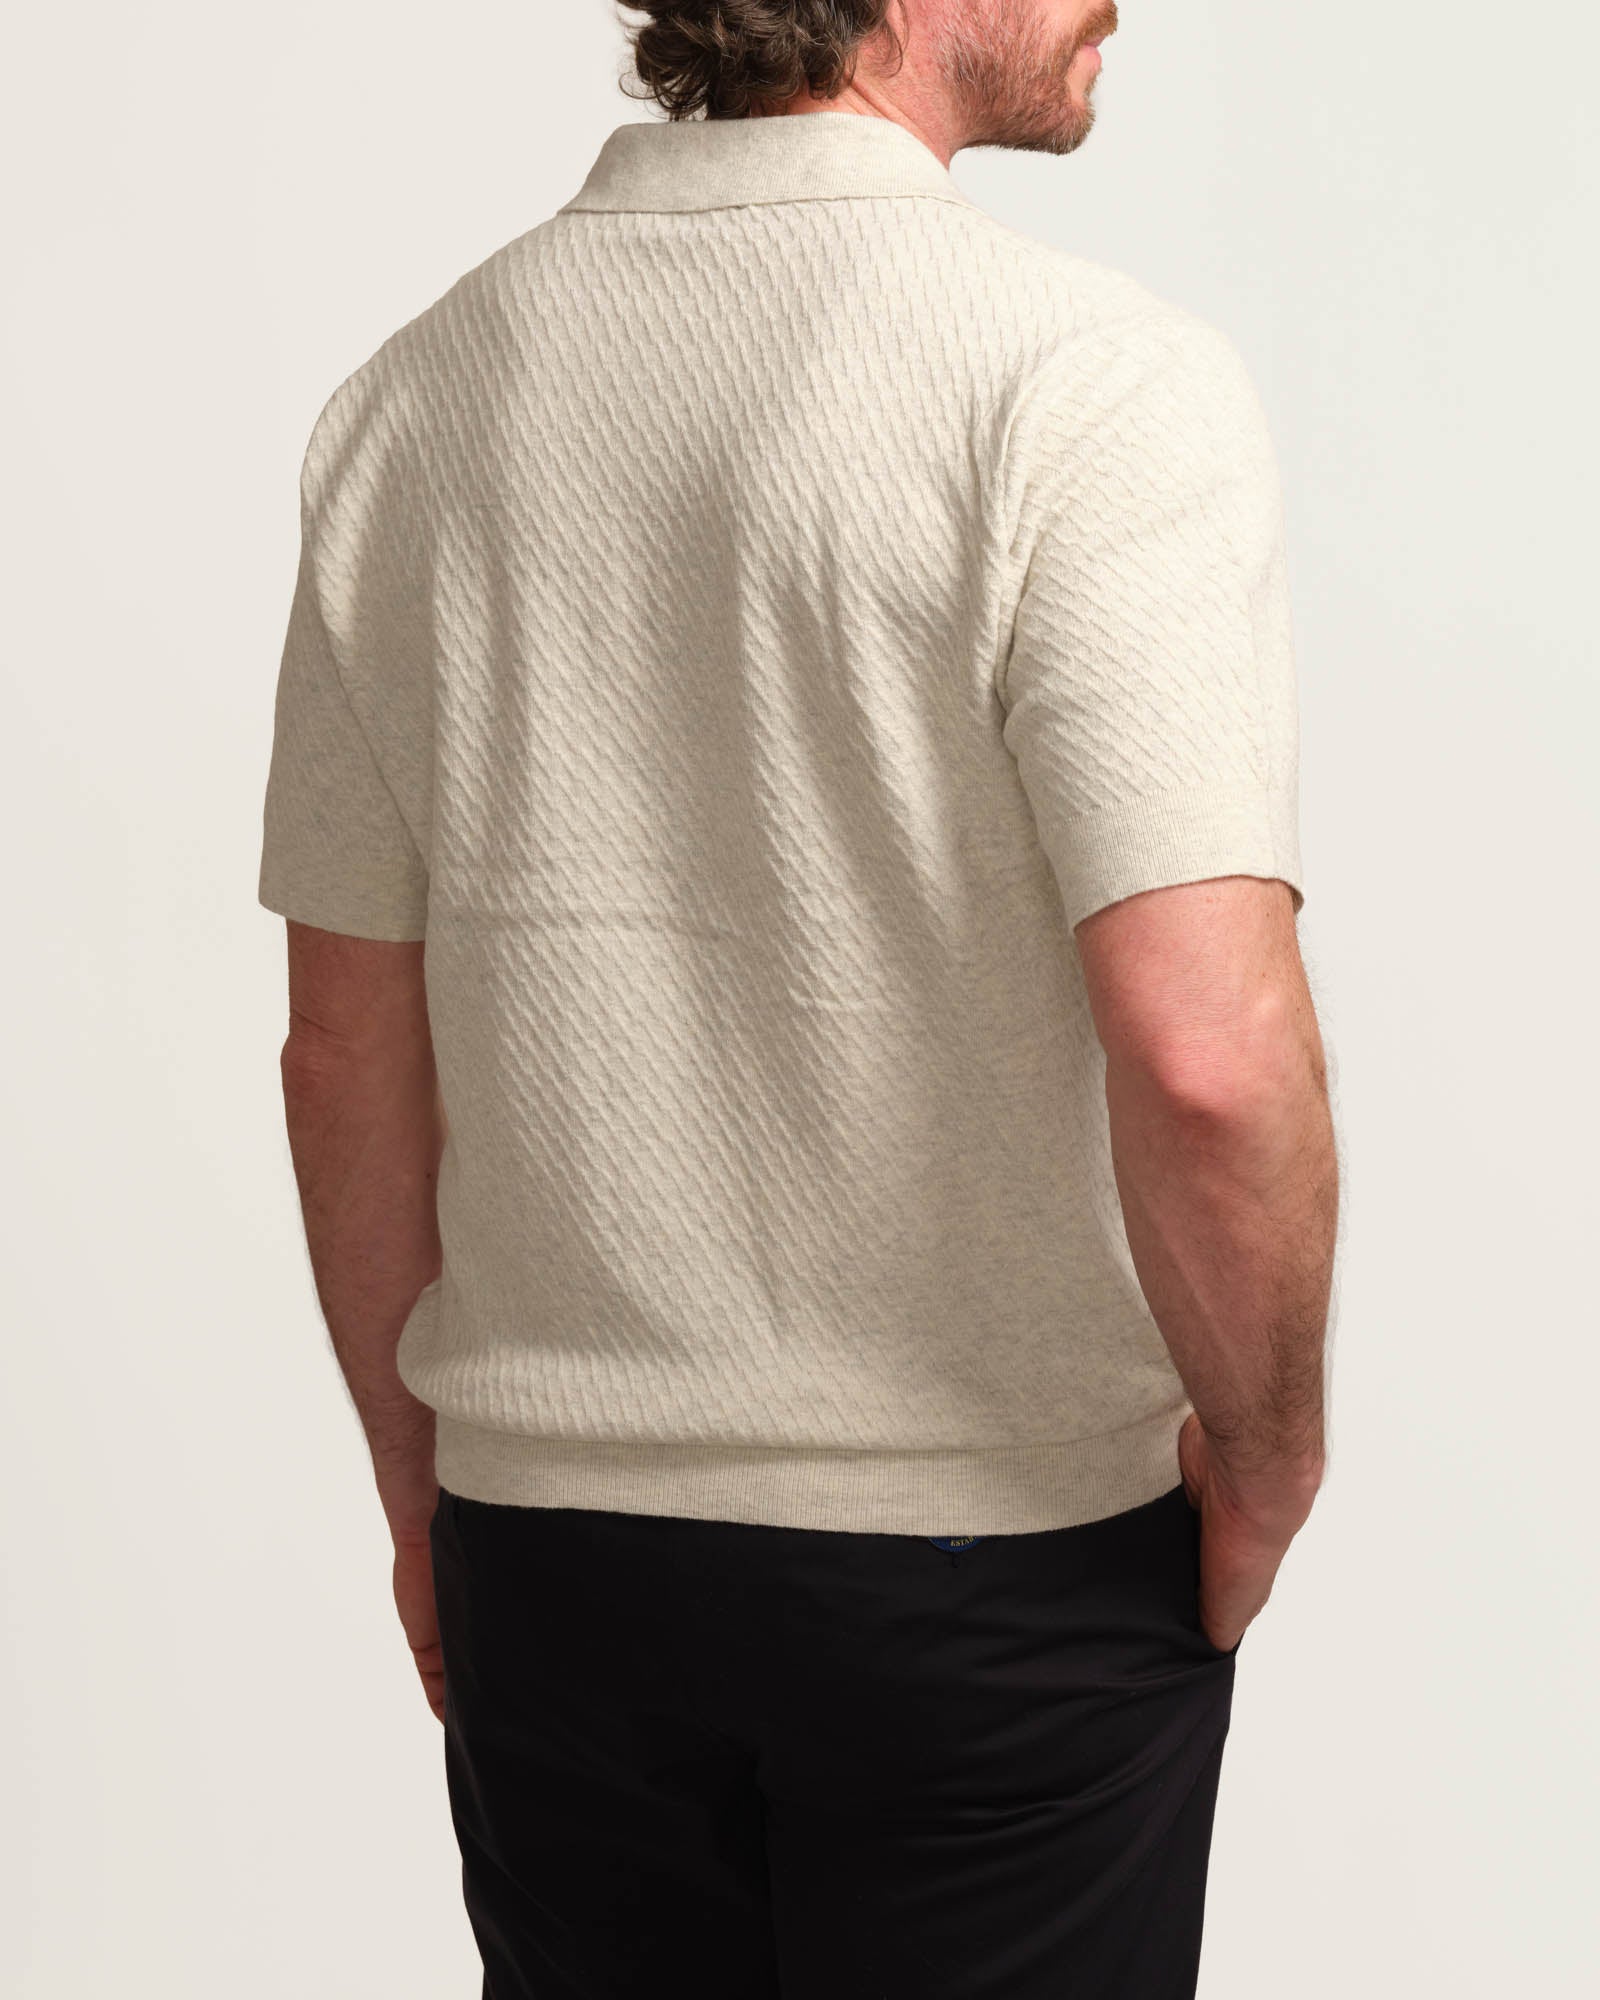 Elie Tahari Men's Novelty Textured Sweater Polo | JANE + MERCER